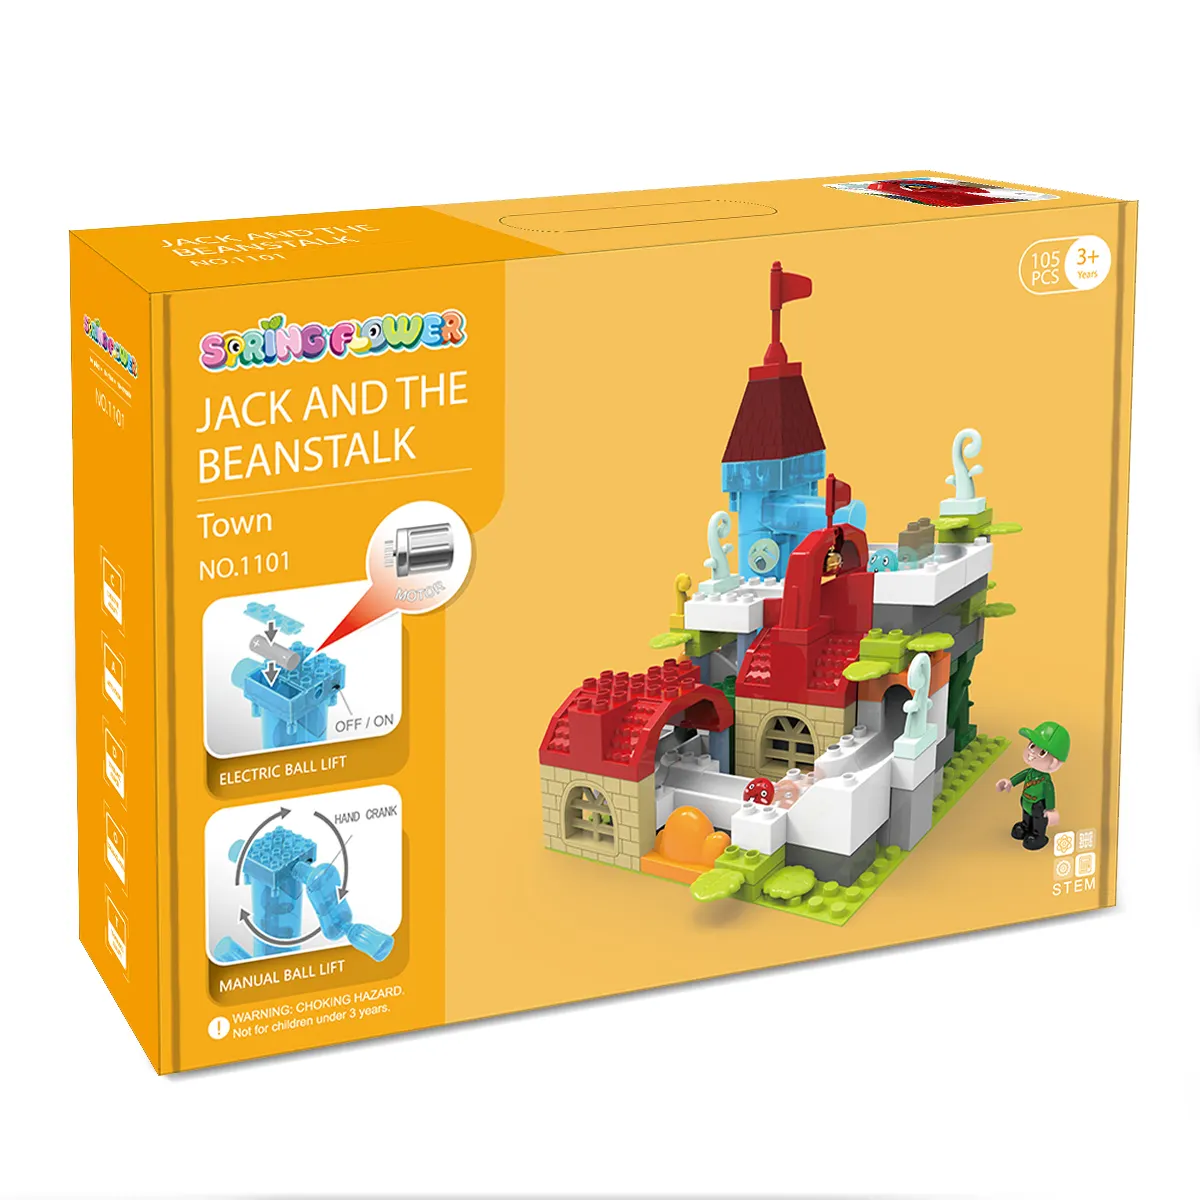 Juego de bloques de construcción de canicas de plástico DIY Jack and the Beanstalk modelo educativo ladrillo Al juguete de construcción